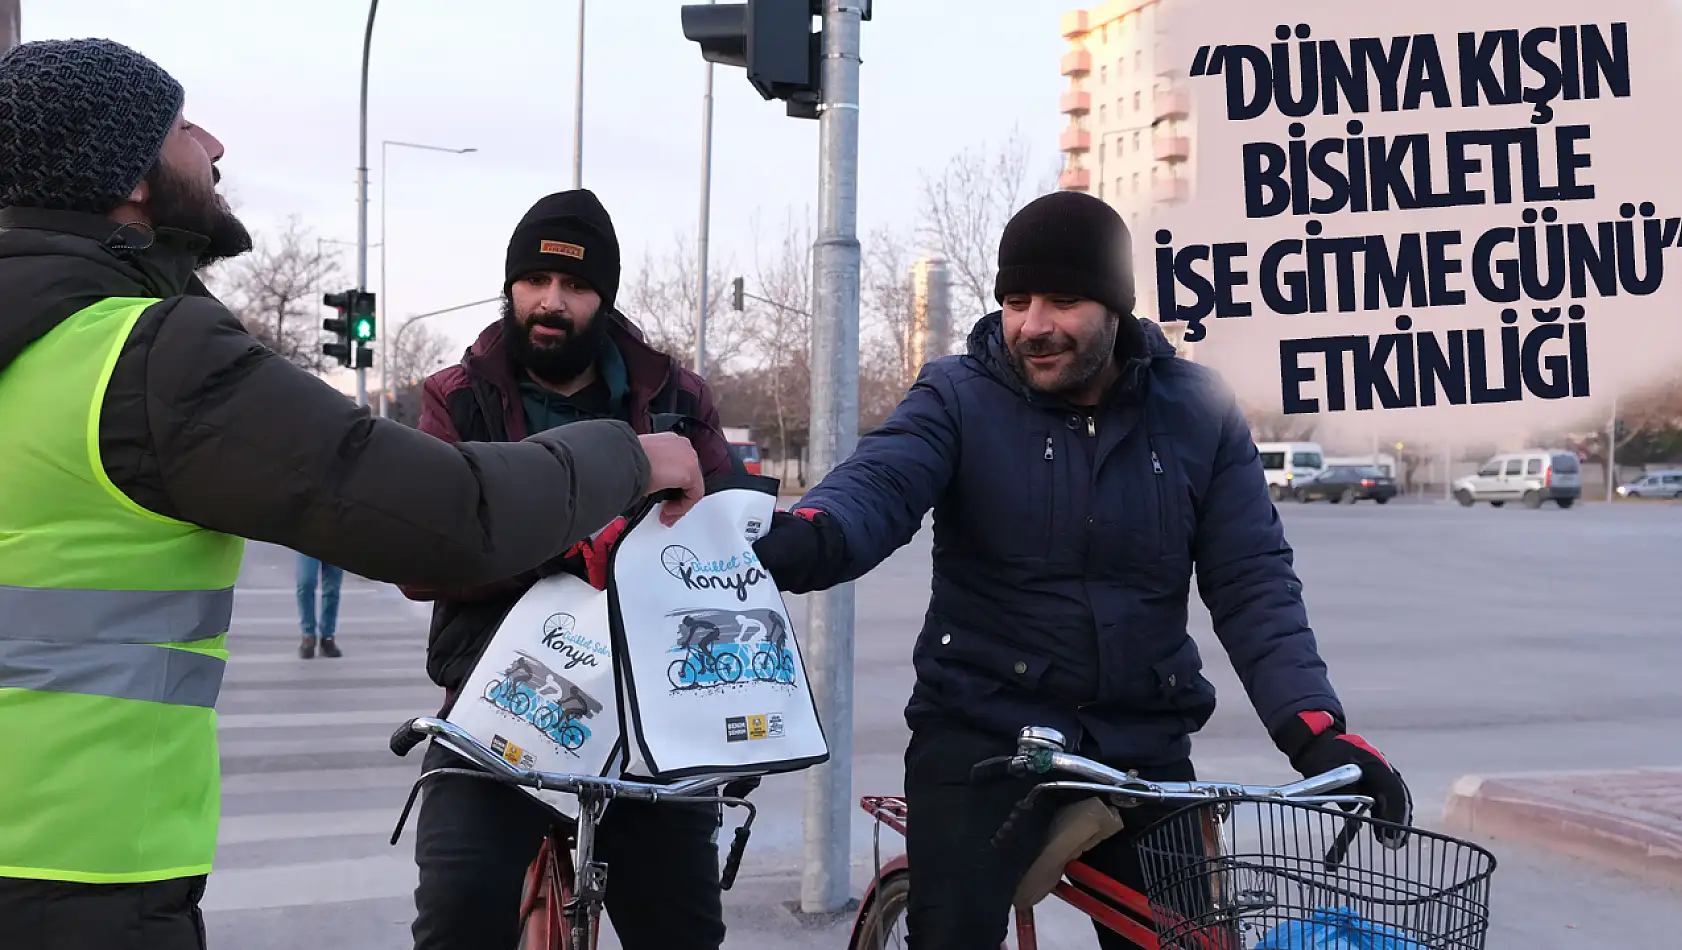 Konya Büyükşehir Belediyesi, 'Dünya Kışın Bisikletle İşe Gitme Günü' Etkinliği Düzenledi